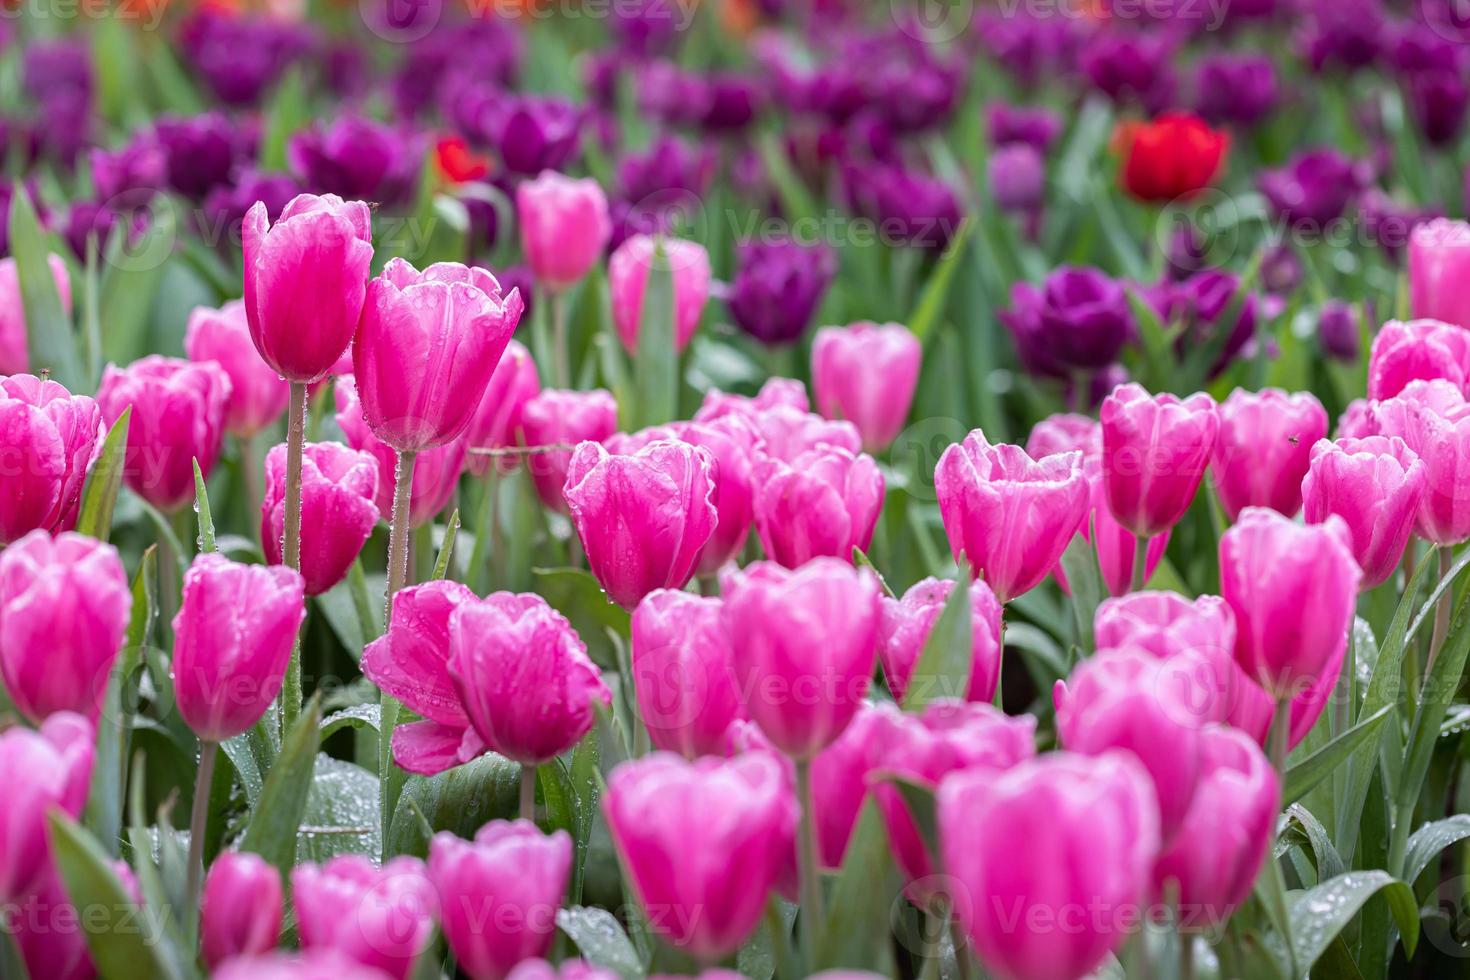 champ de tulipes colorées en fleurs au printemps photo